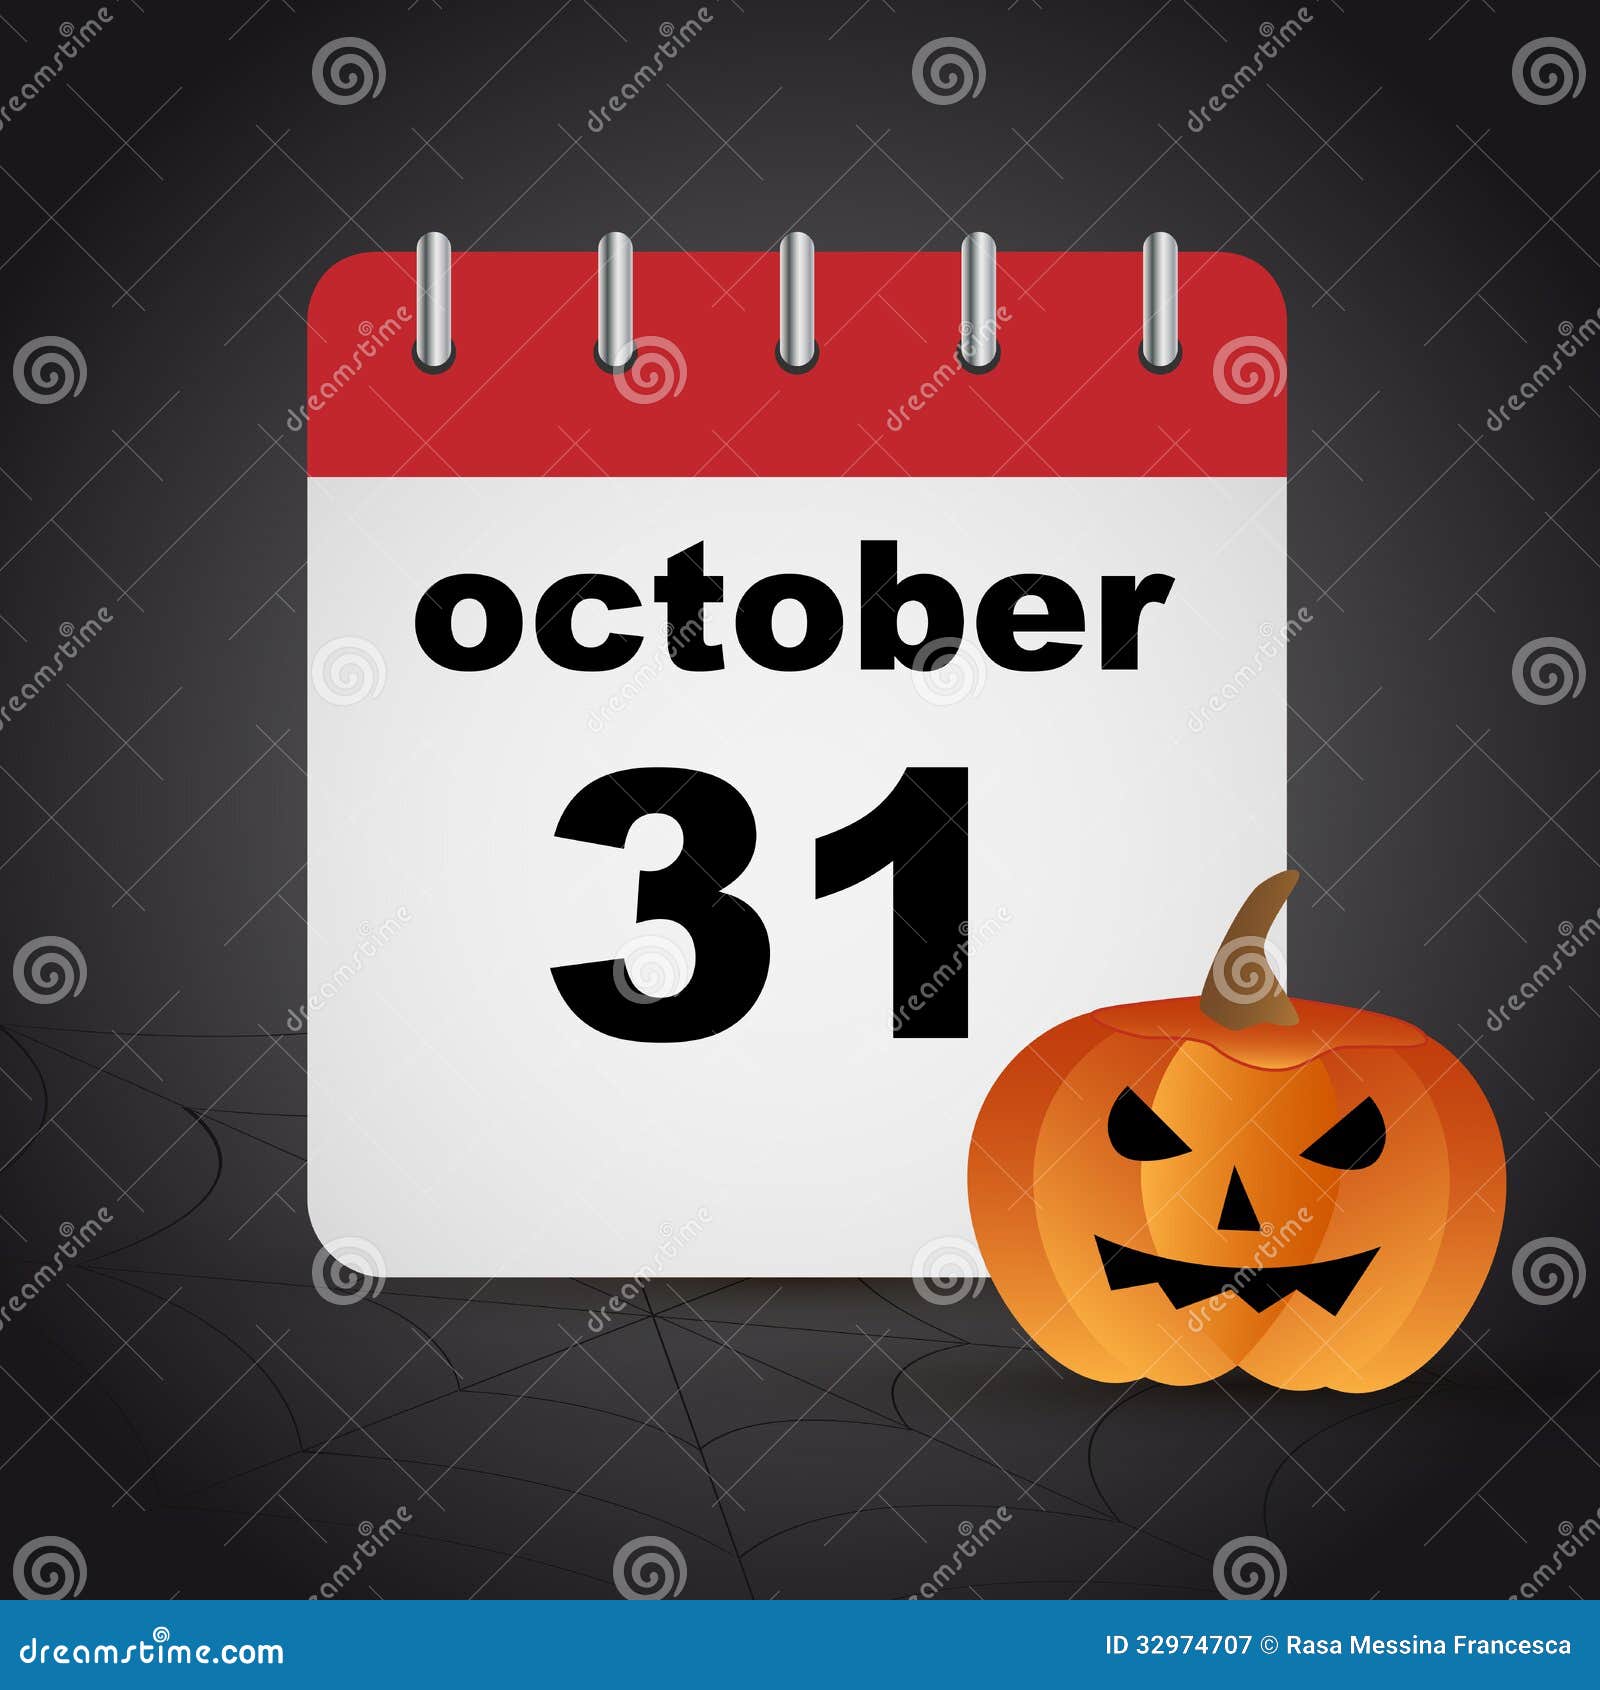 Dia das Bruxas – 31 de Outubro